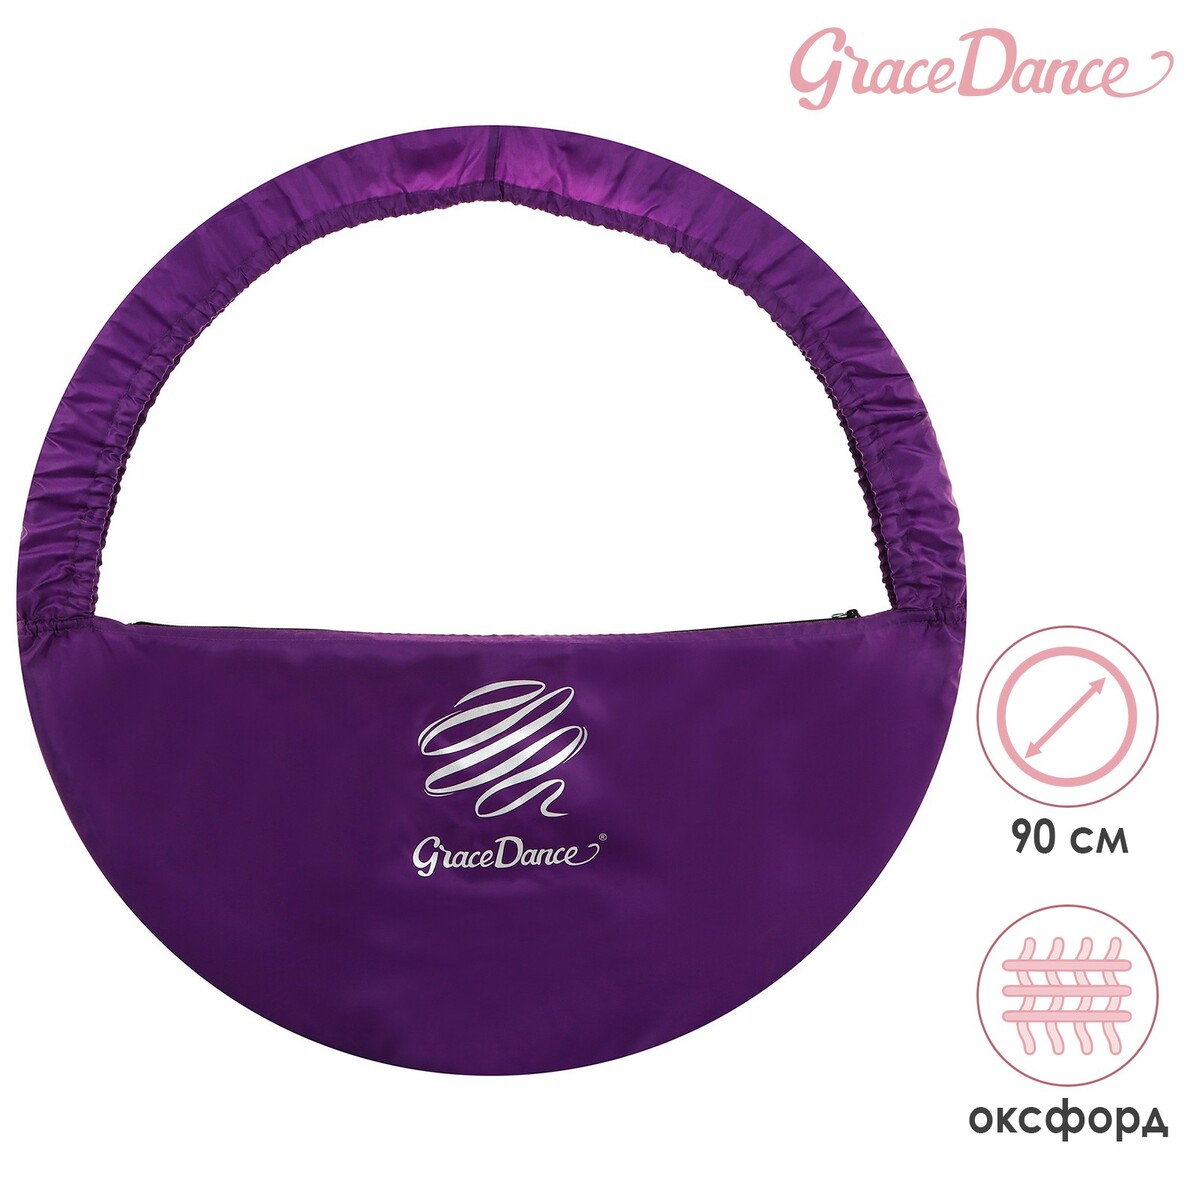 Чехол для обруча grace dance, d=90 см, цвет фиолетовый обмотка для гимнастического обруча indigo rainbow in151 wv 20мм 14м зерк на подкл бел фиол